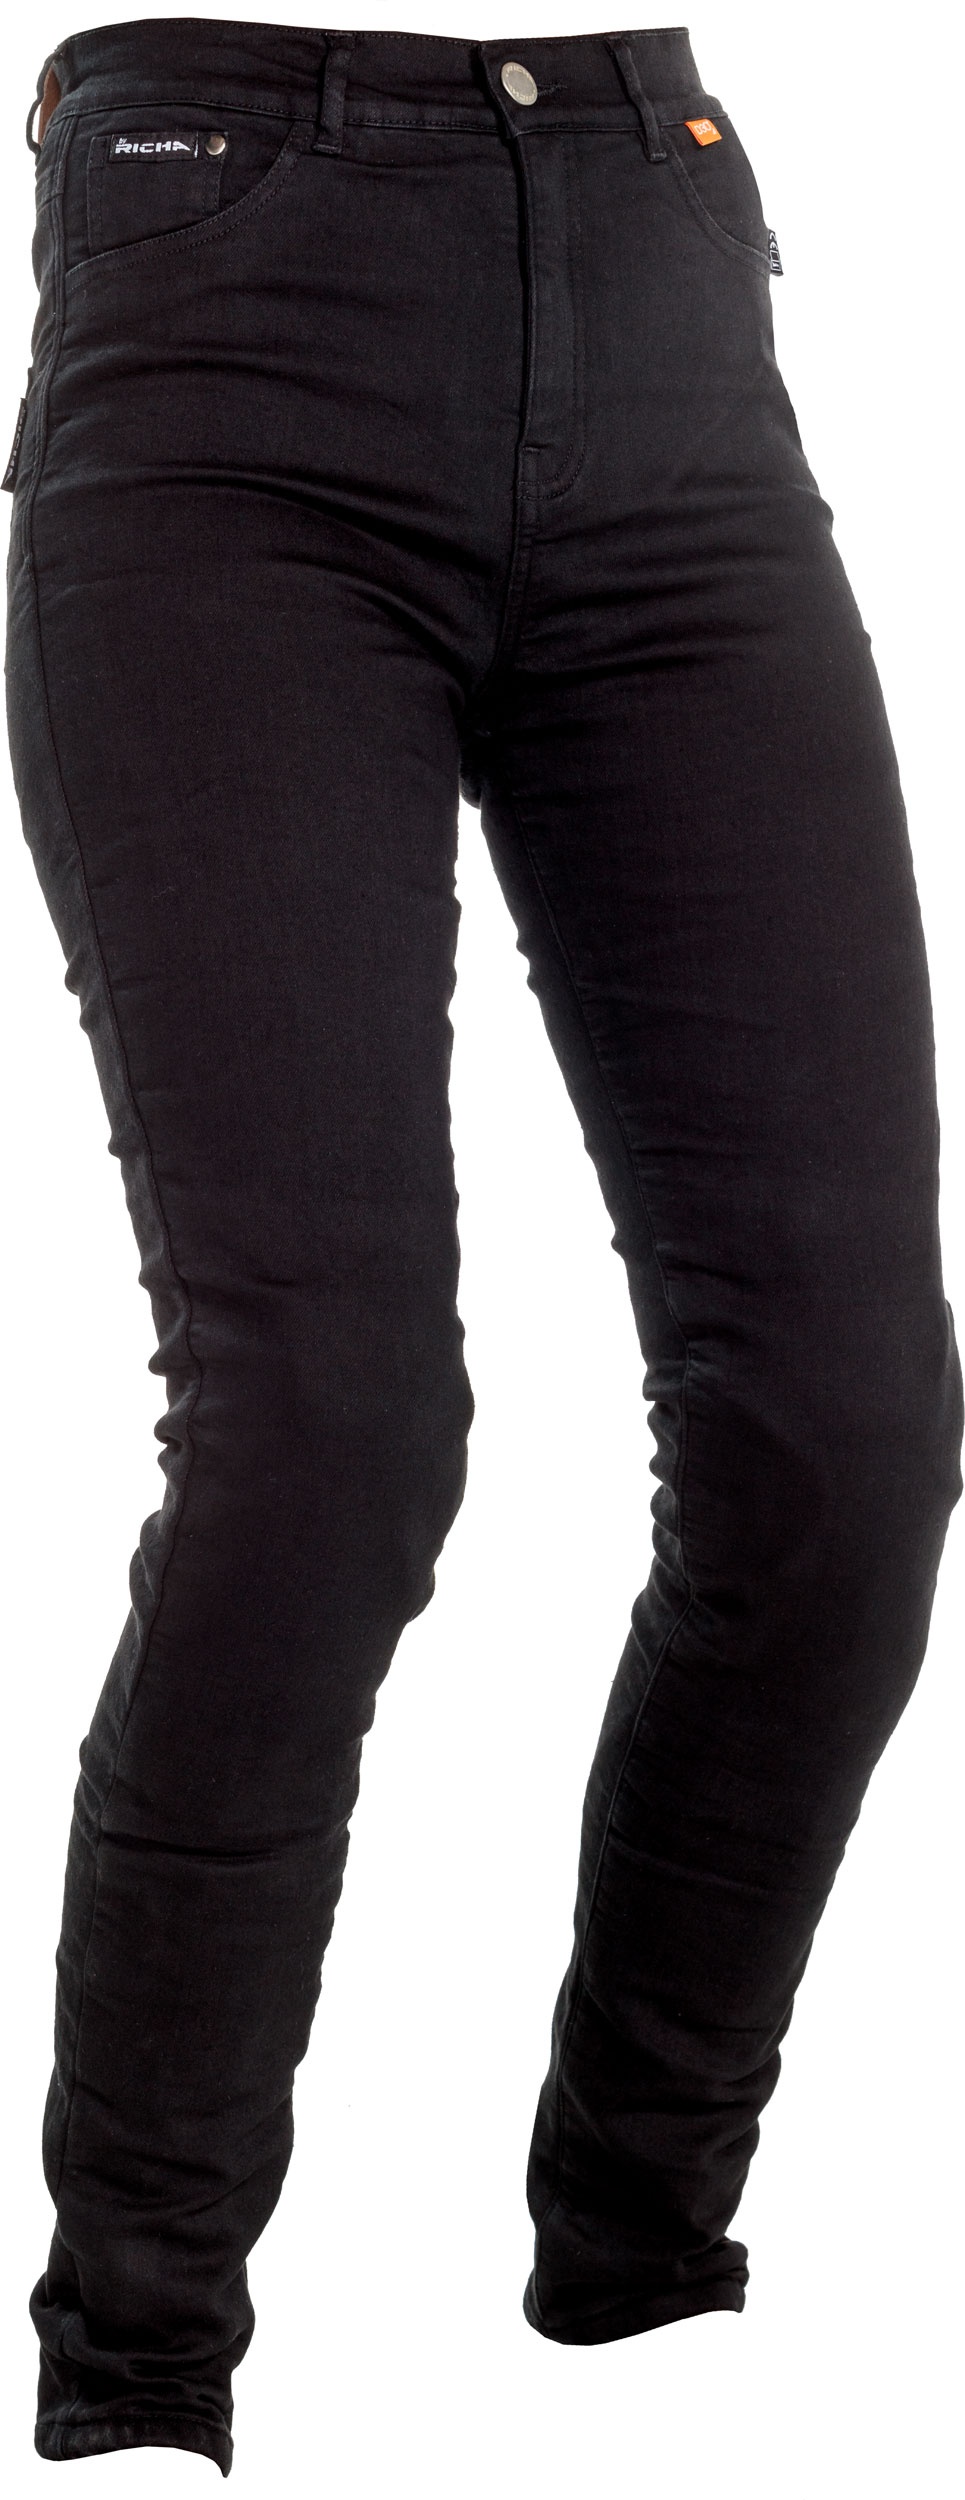 Richa Jegging, jeans femmes - Noir - 50